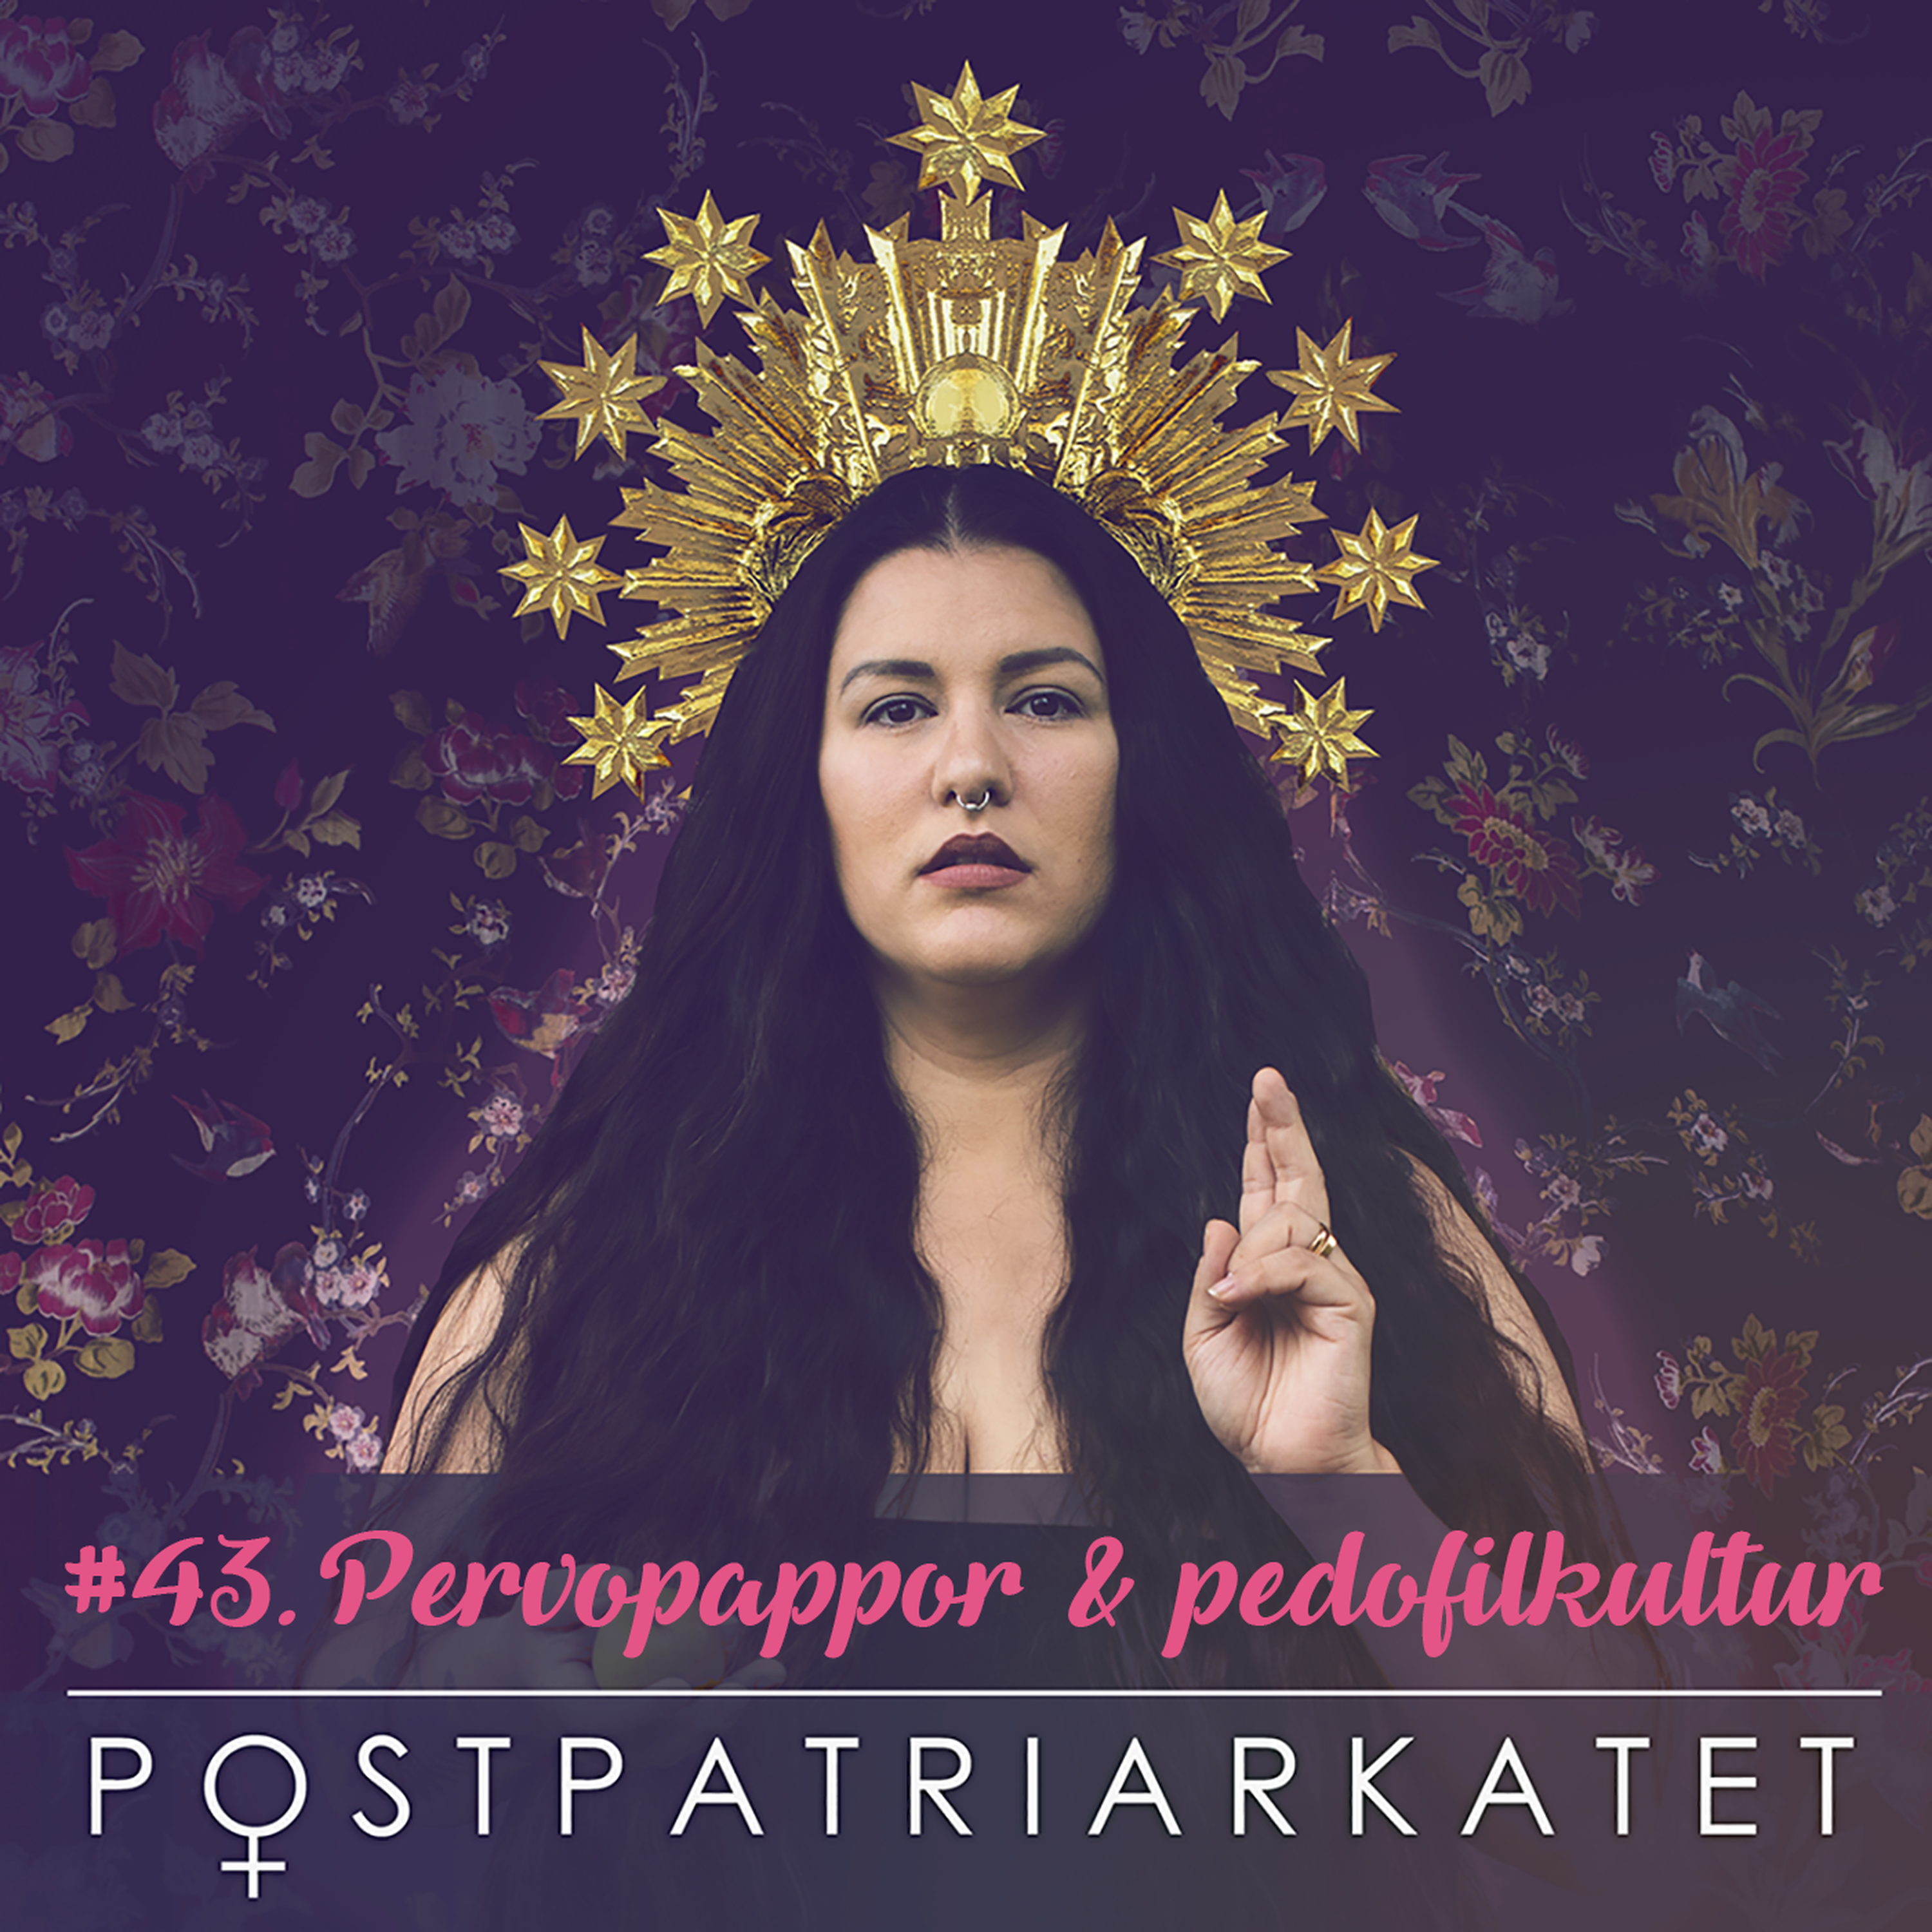 Pervopappor & pedofilkultur - #43